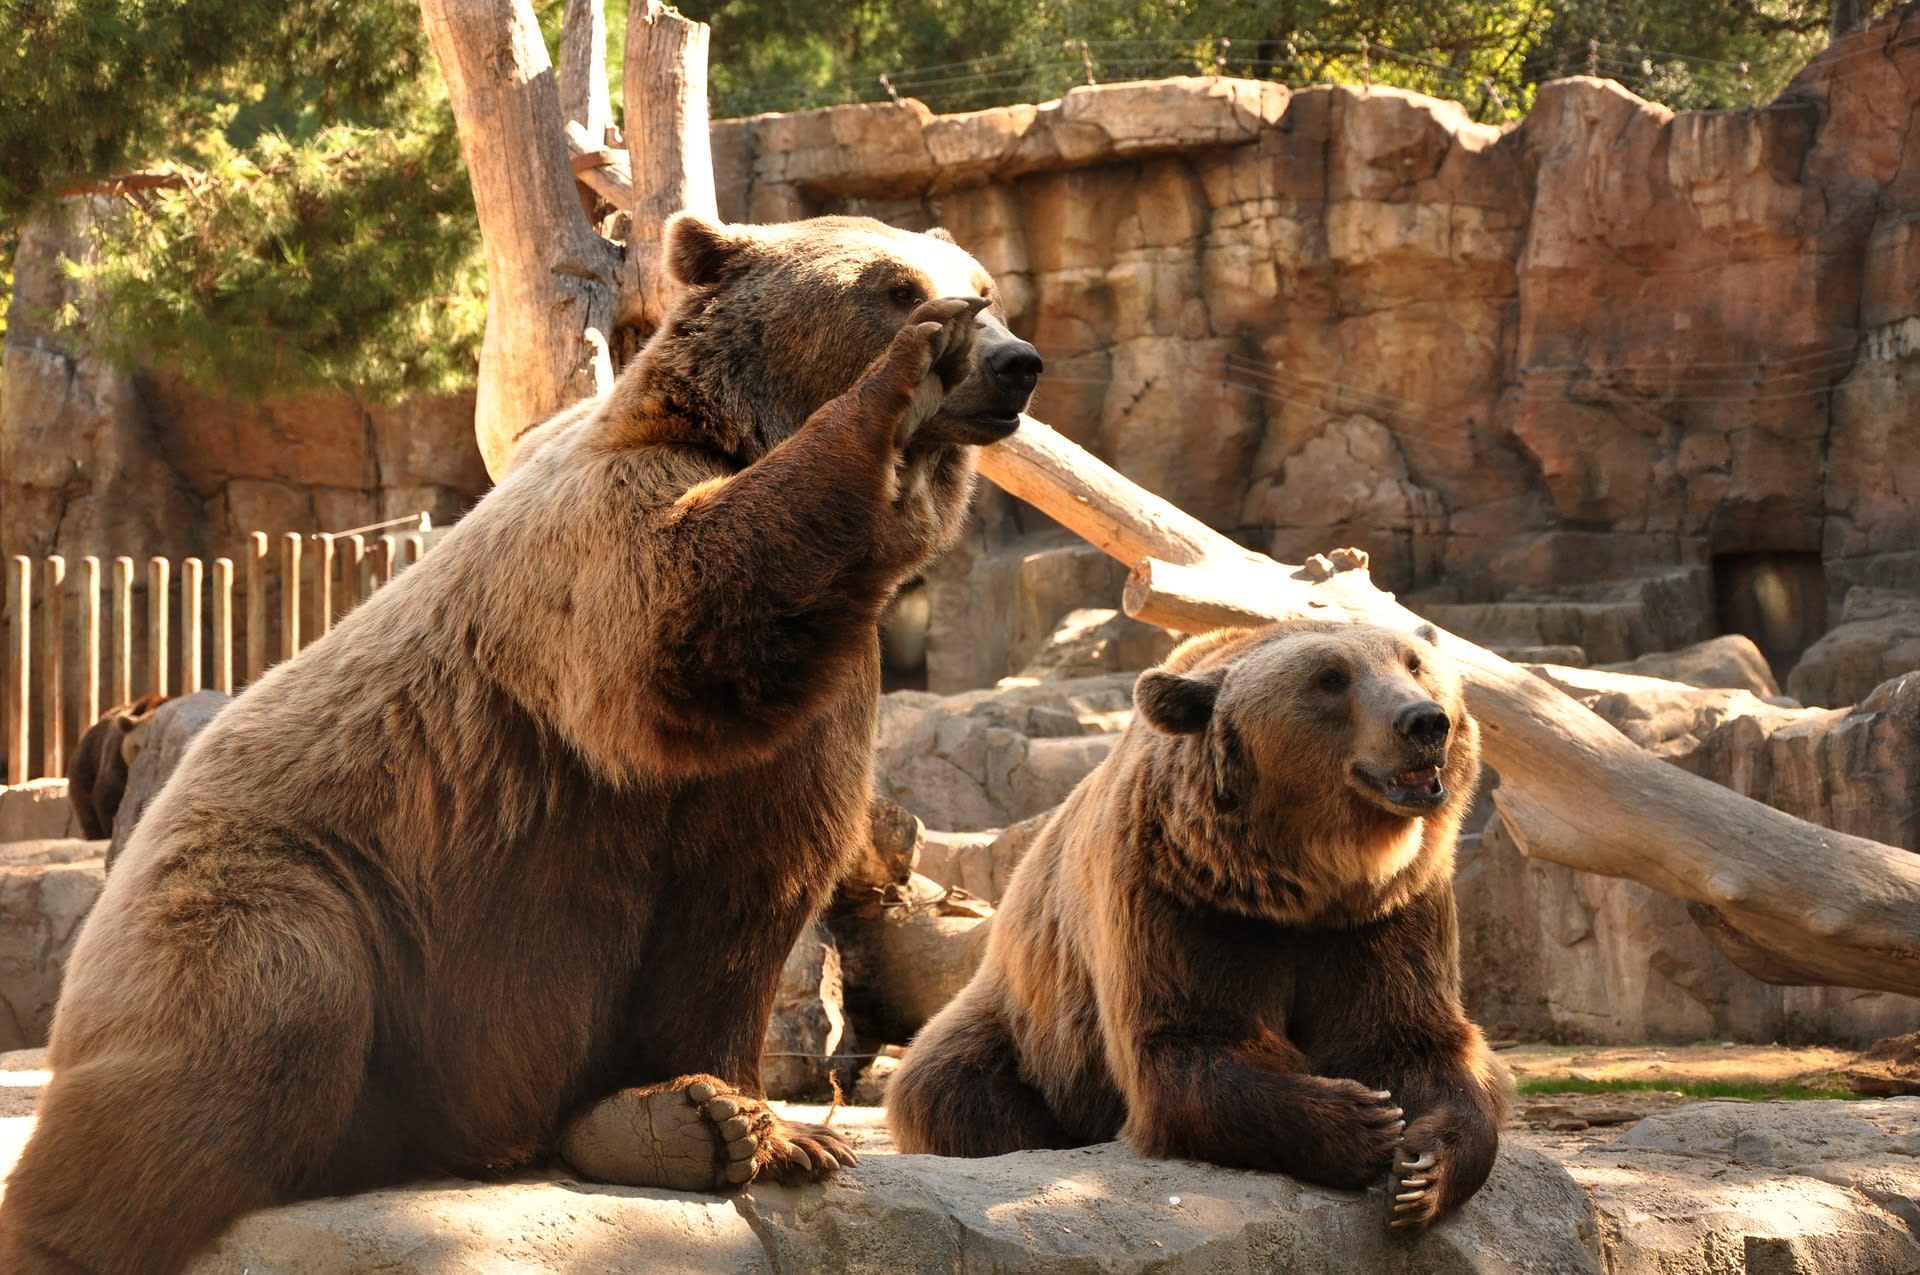 Zoo, cirkusy, žlučové farmy - medvědi jsou v rukách lidí zneužíváni mnoha způsoby...